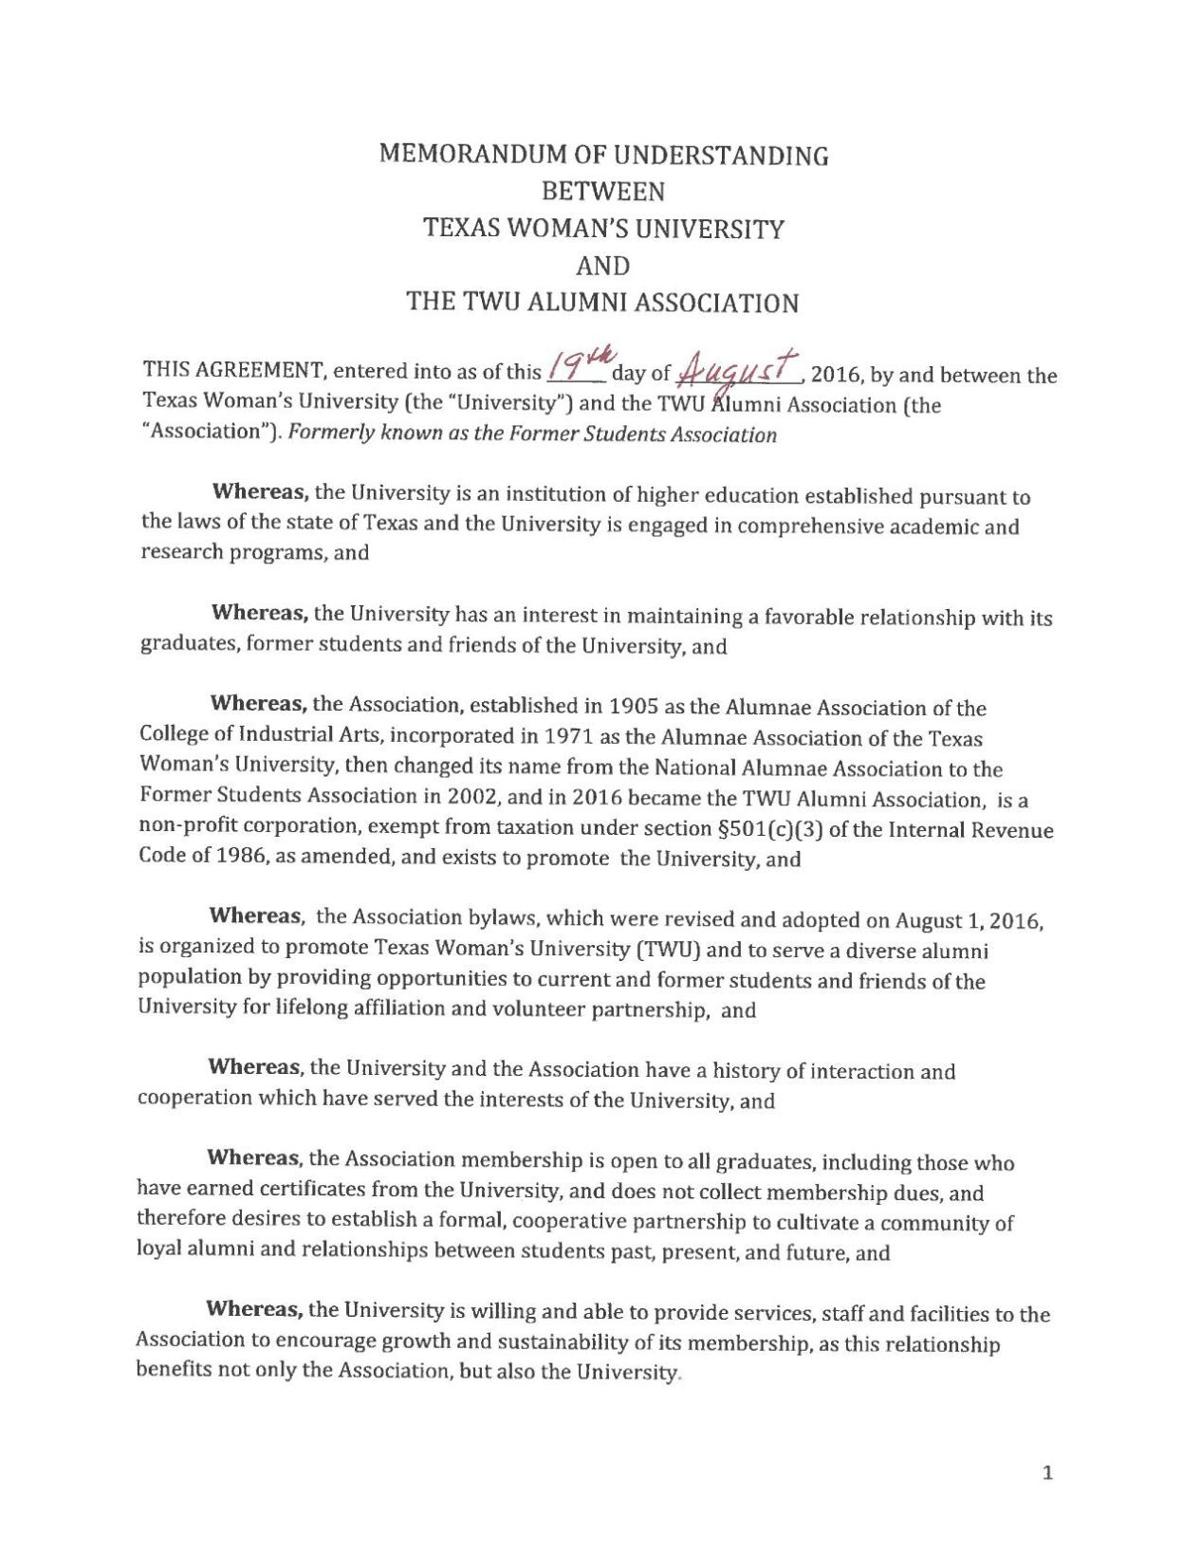 Memorandum of Understanding between TWU & TWU Alumni Association